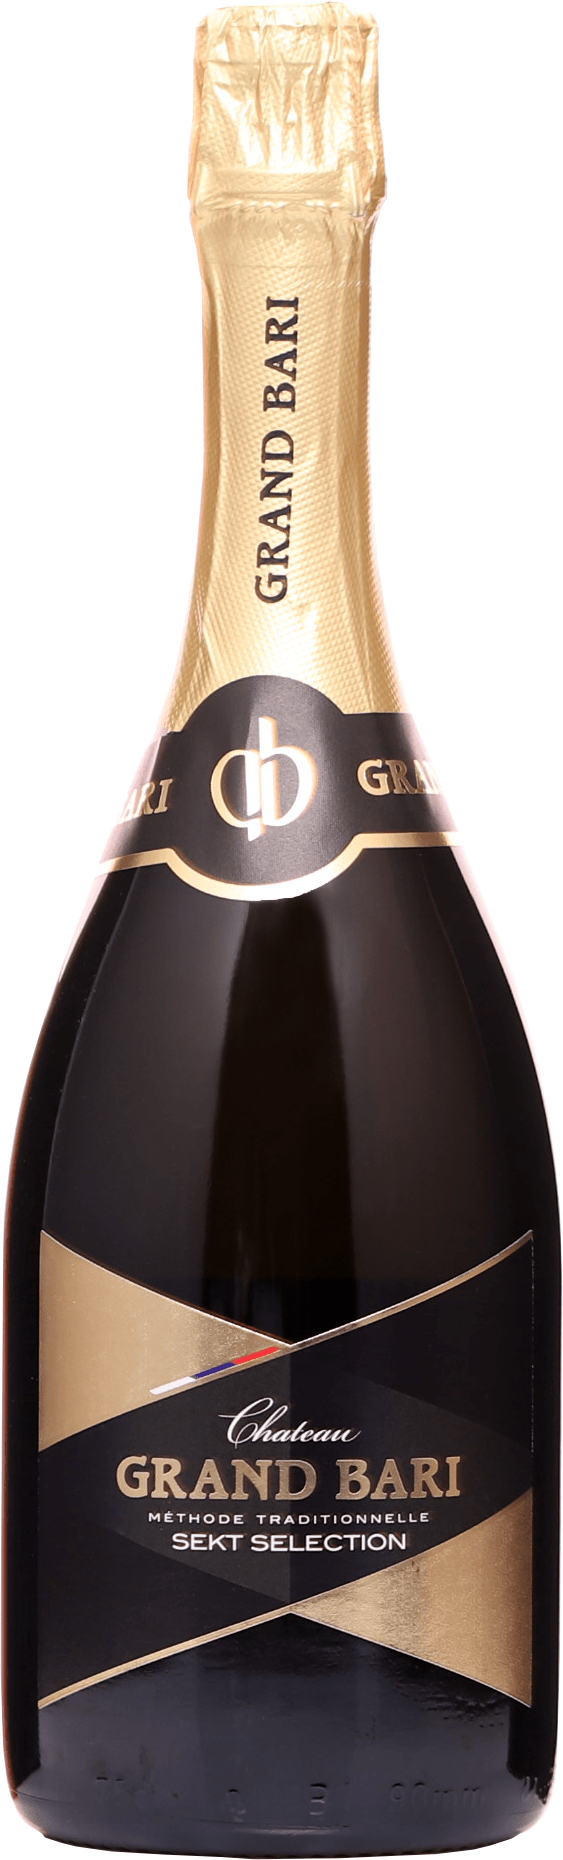 Chateau Grand Bari Sekt Selection 2017 12,5% 0,75l (čistá fľaša)